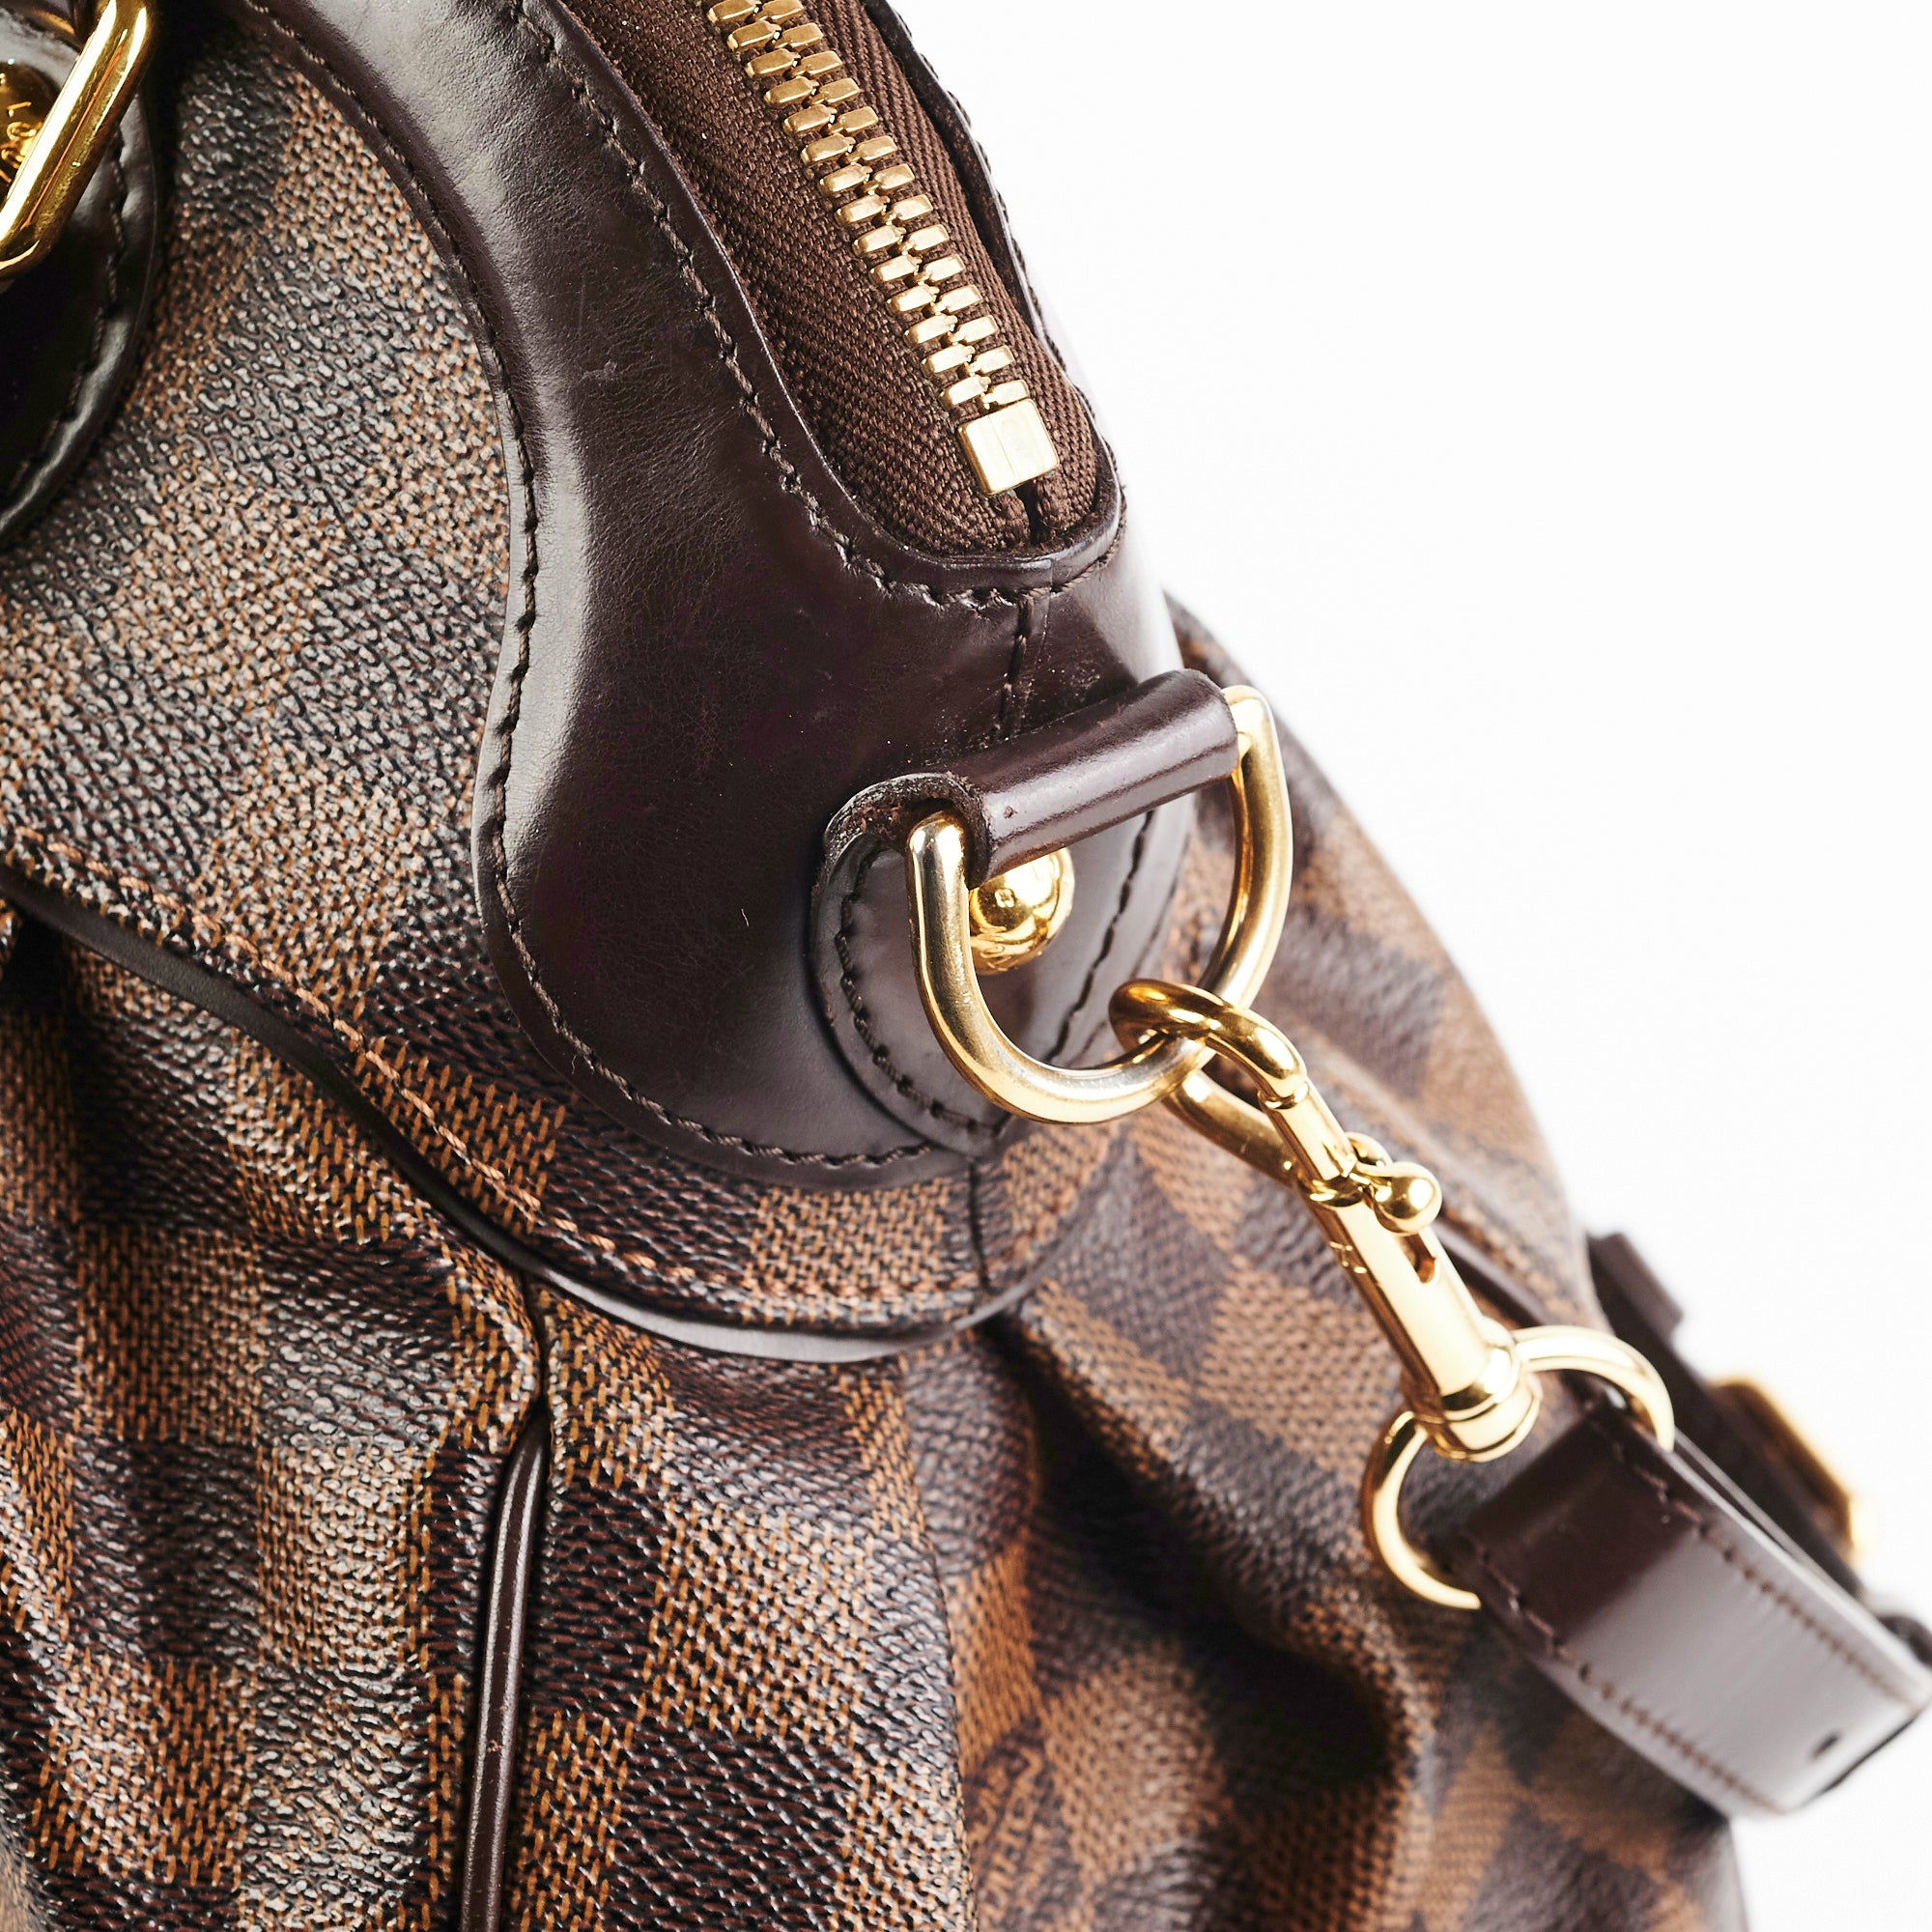 Authentic Louis Vuitton Trevi PМ Damier Ebene Satchel Handbag TJ0172 France